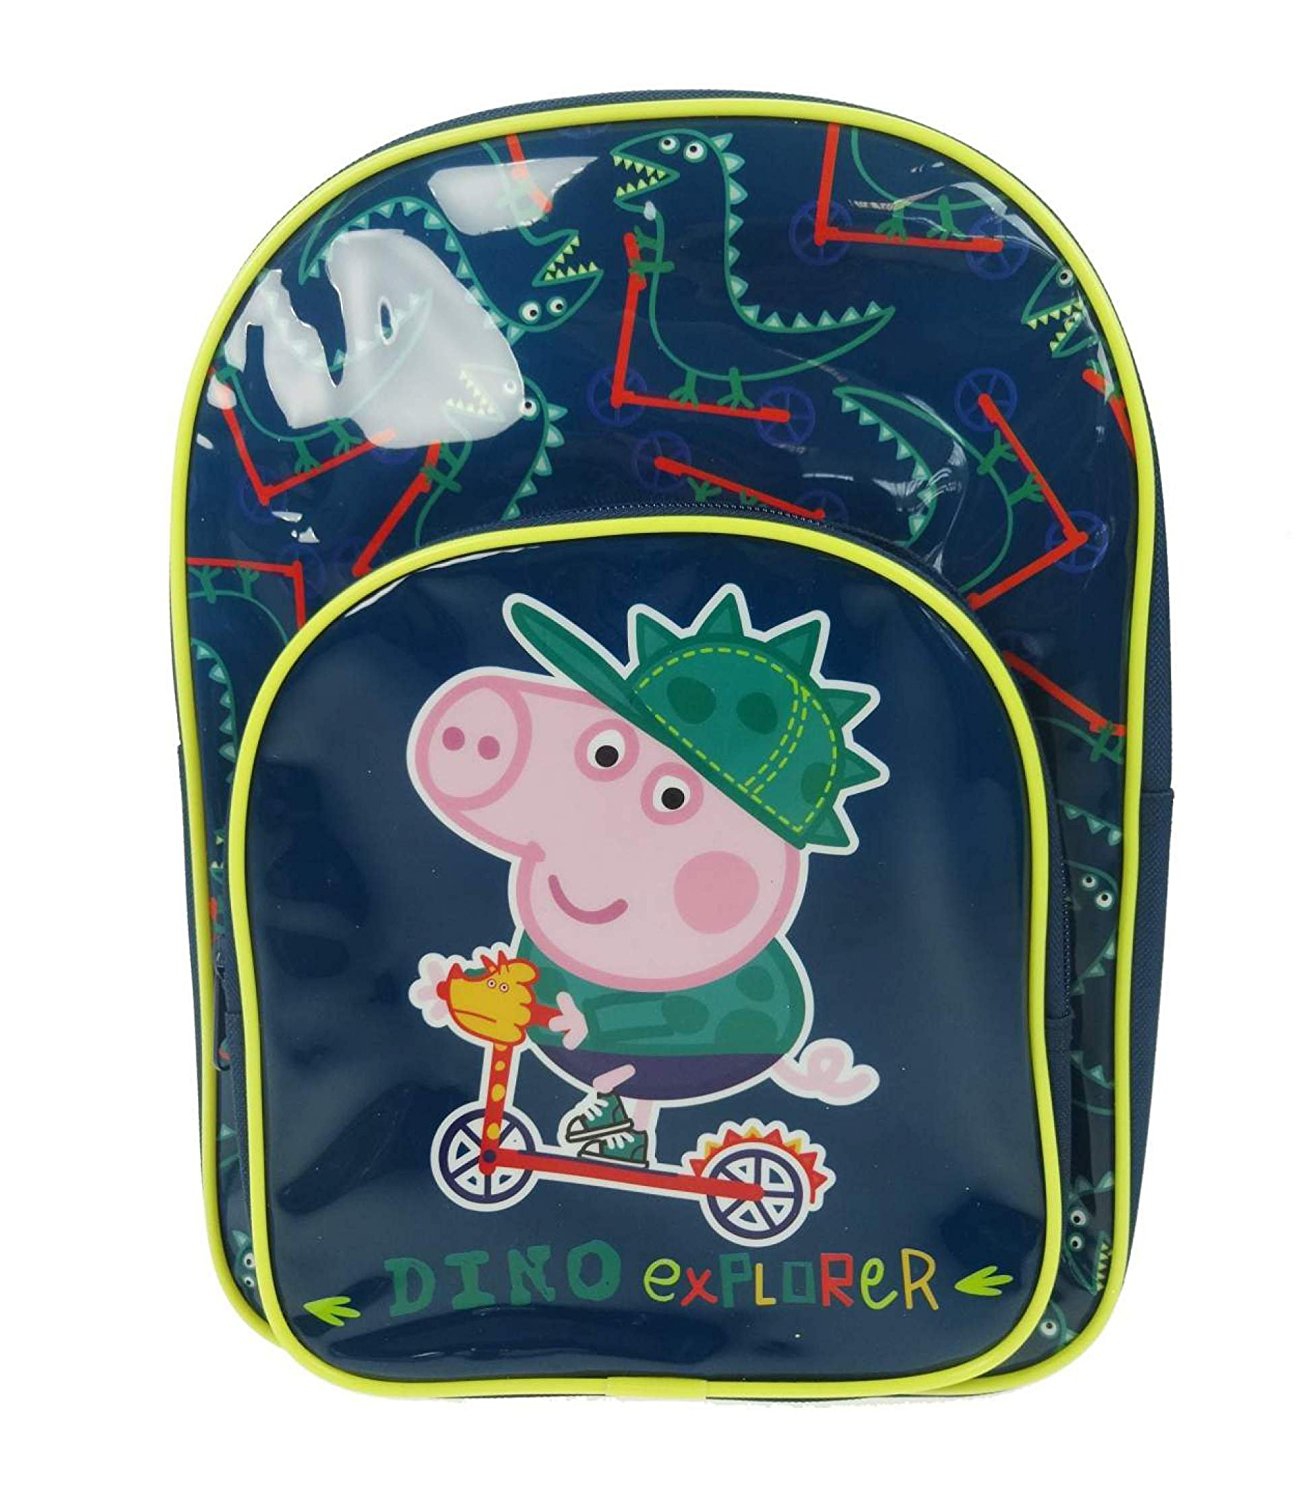 Peppa Pig Dino Explorer School Bag Rucksack Backpack